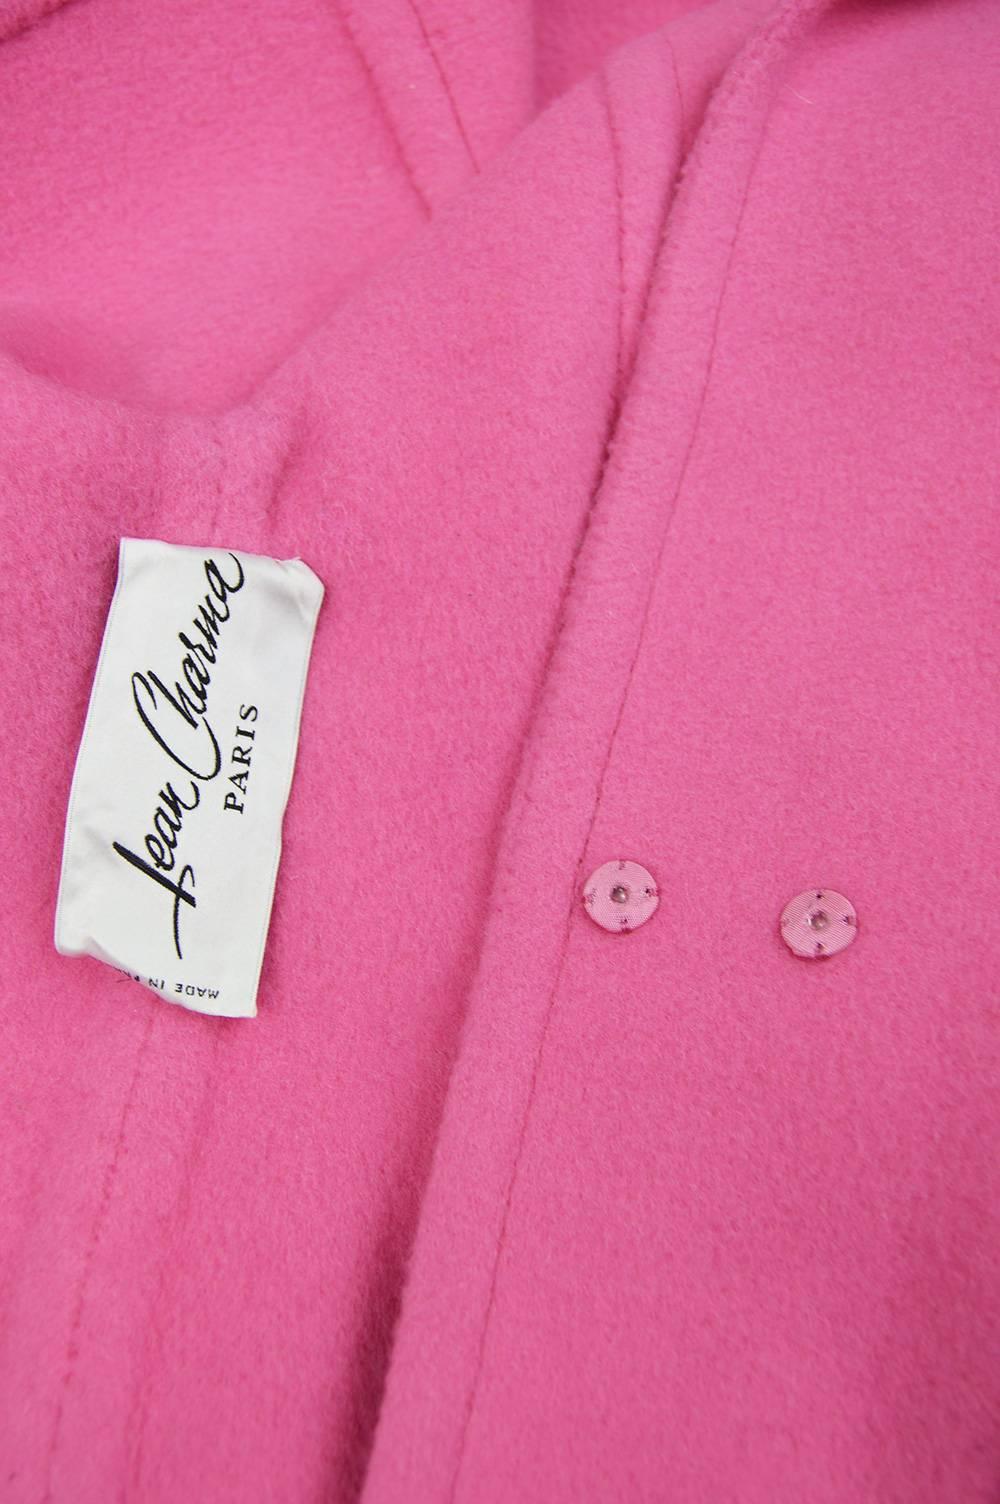 Jean Charma Paris Vintage Couture Minimalist Bubblegum Pink Wool Jacket, 1960s  For Sale 3